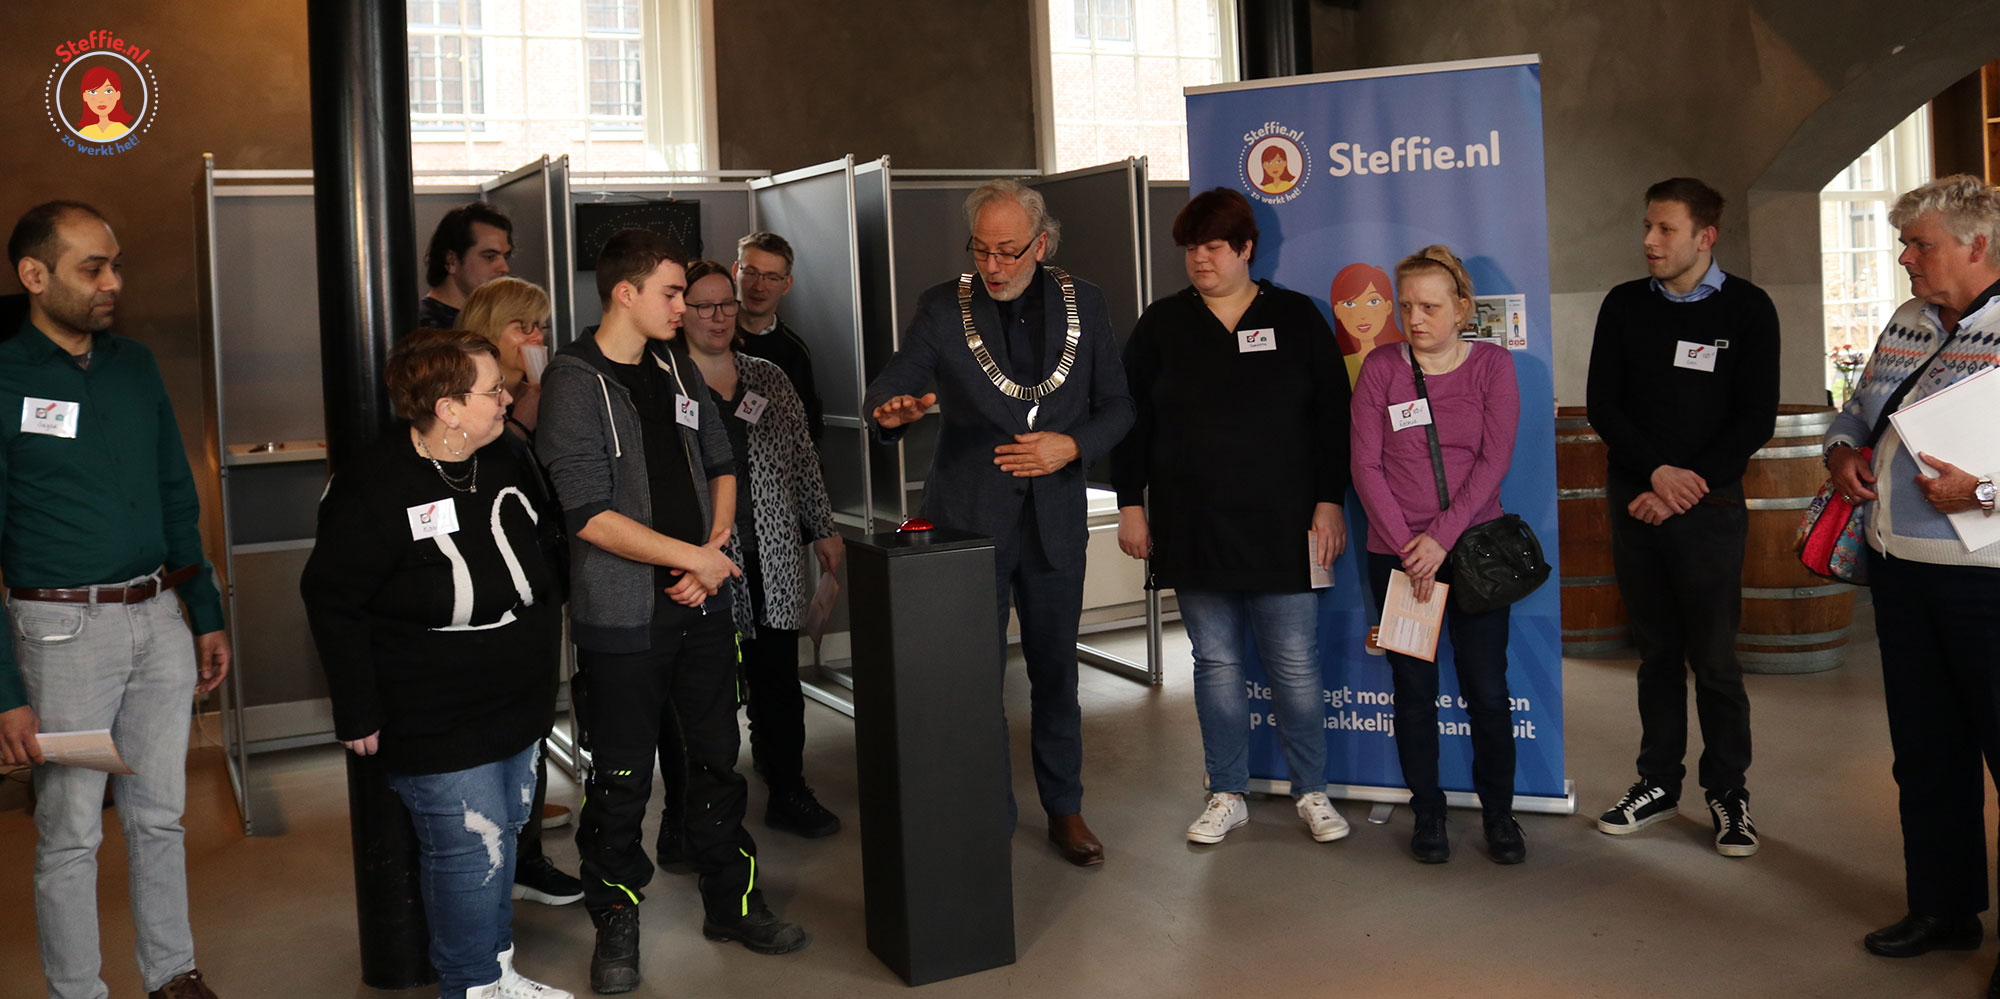 Burgemeester Victor Molkenboer opent het stemlaboratorium van Steffie in Woerden